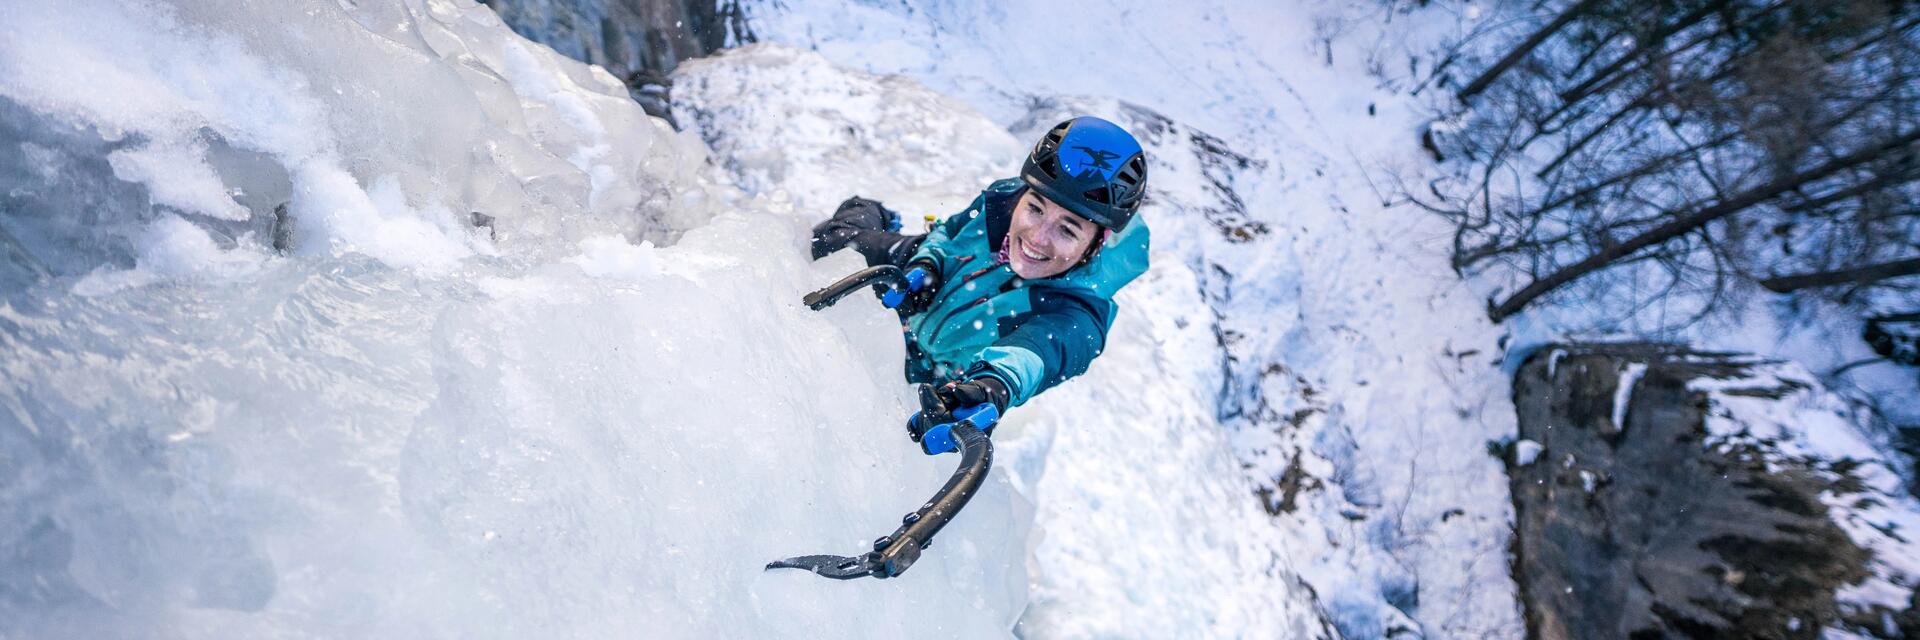 Kobieta w kasku wspinaczkowym wbijająca czekan w lód podczas wspinaczki lodowej